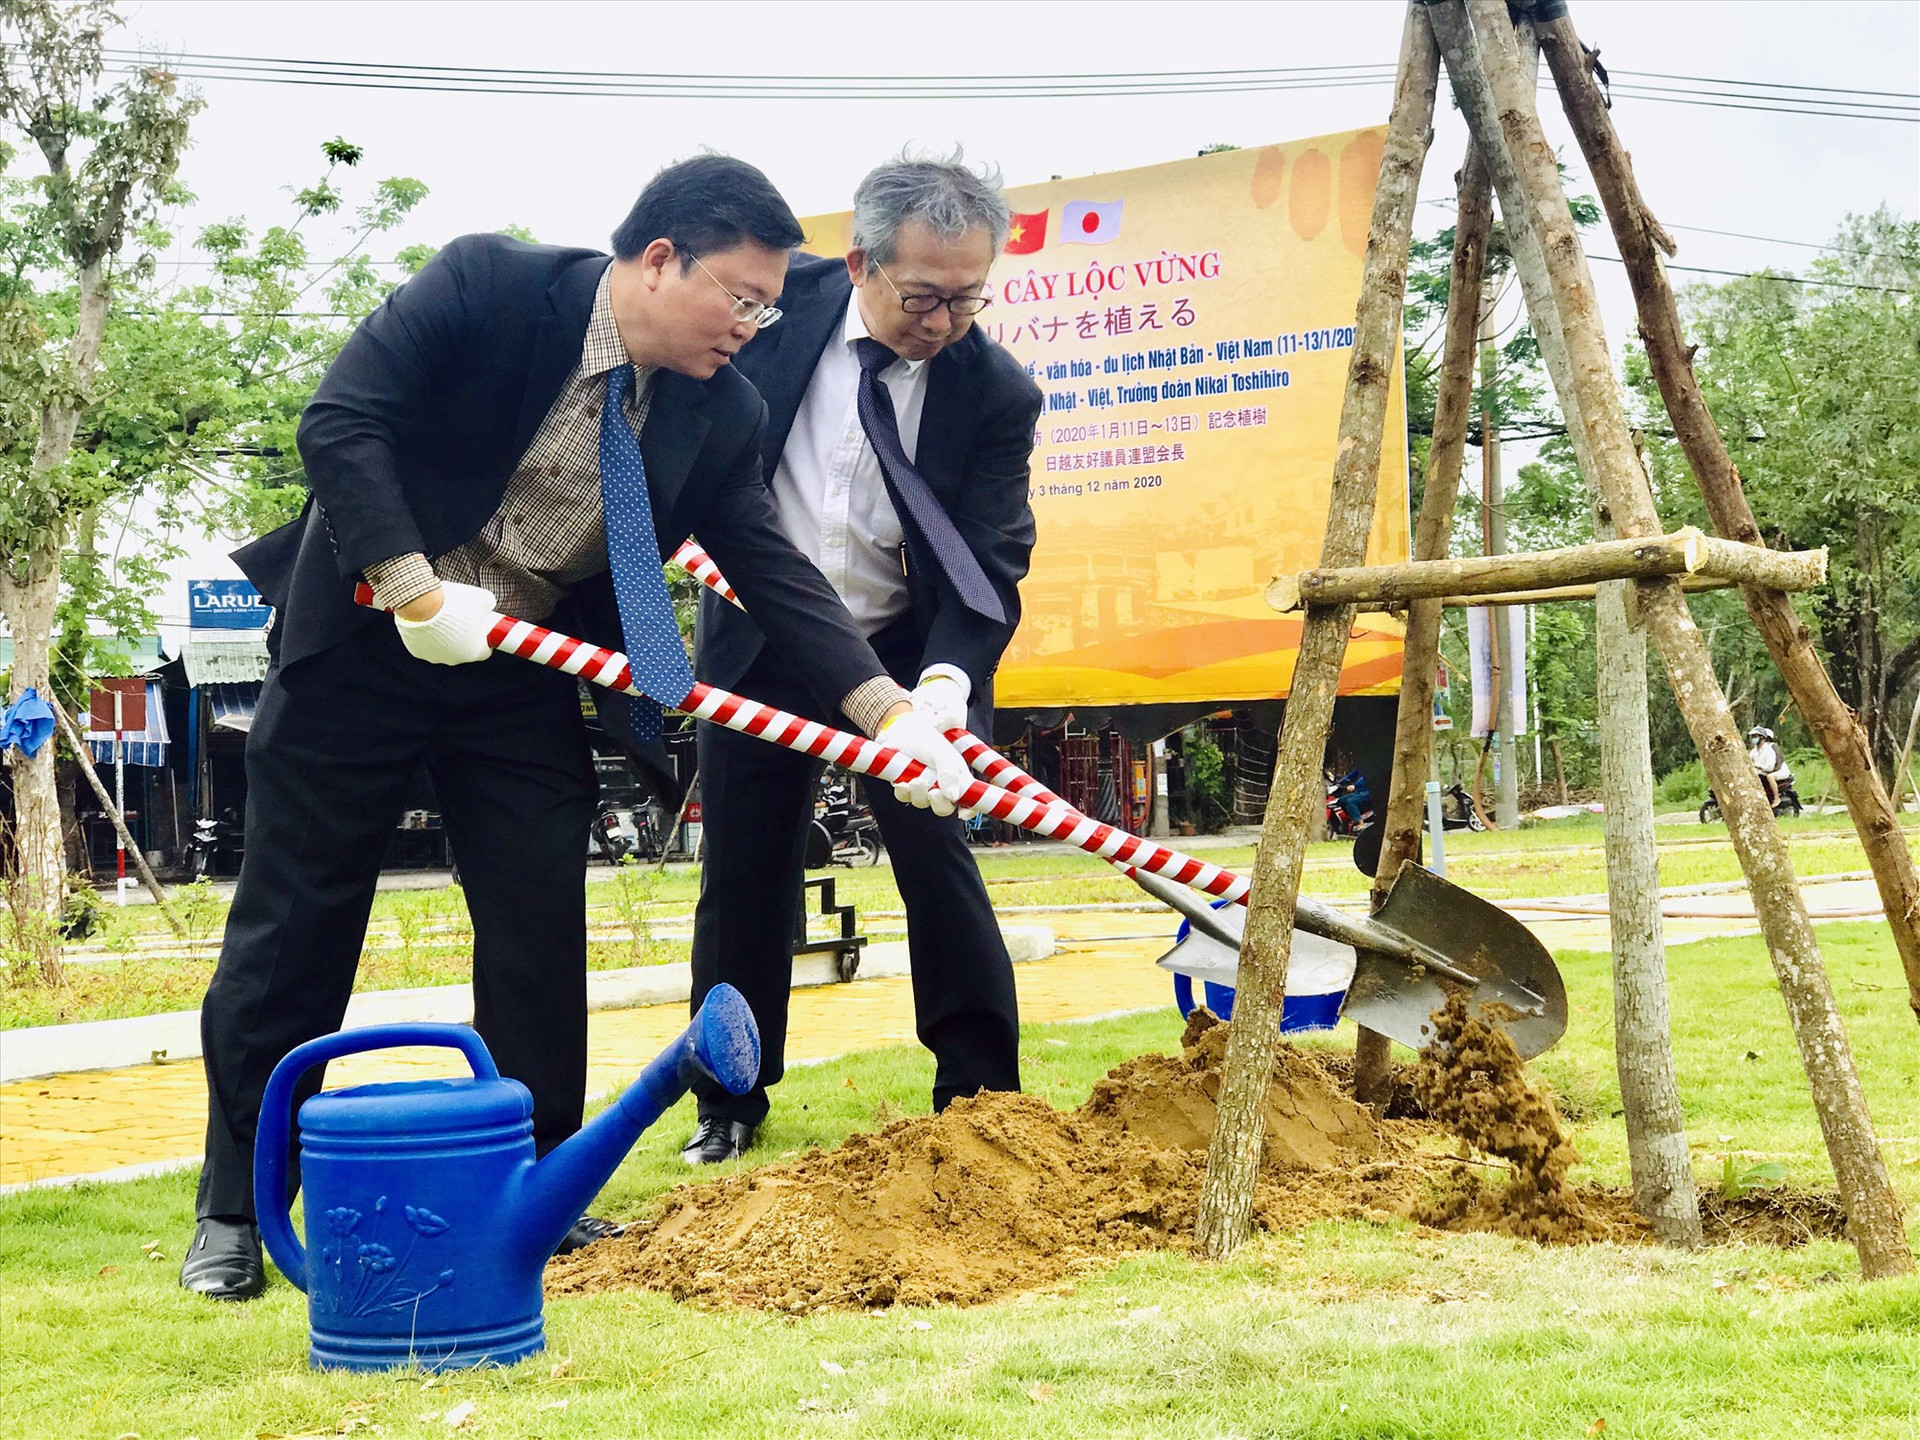 Chủ tịch UBND tỉnh Lê Trí Thanh trồng cây tại một sự kiện ngoại giao giữa Việt Nam và Nhật Bản. Ảnh: Q.T